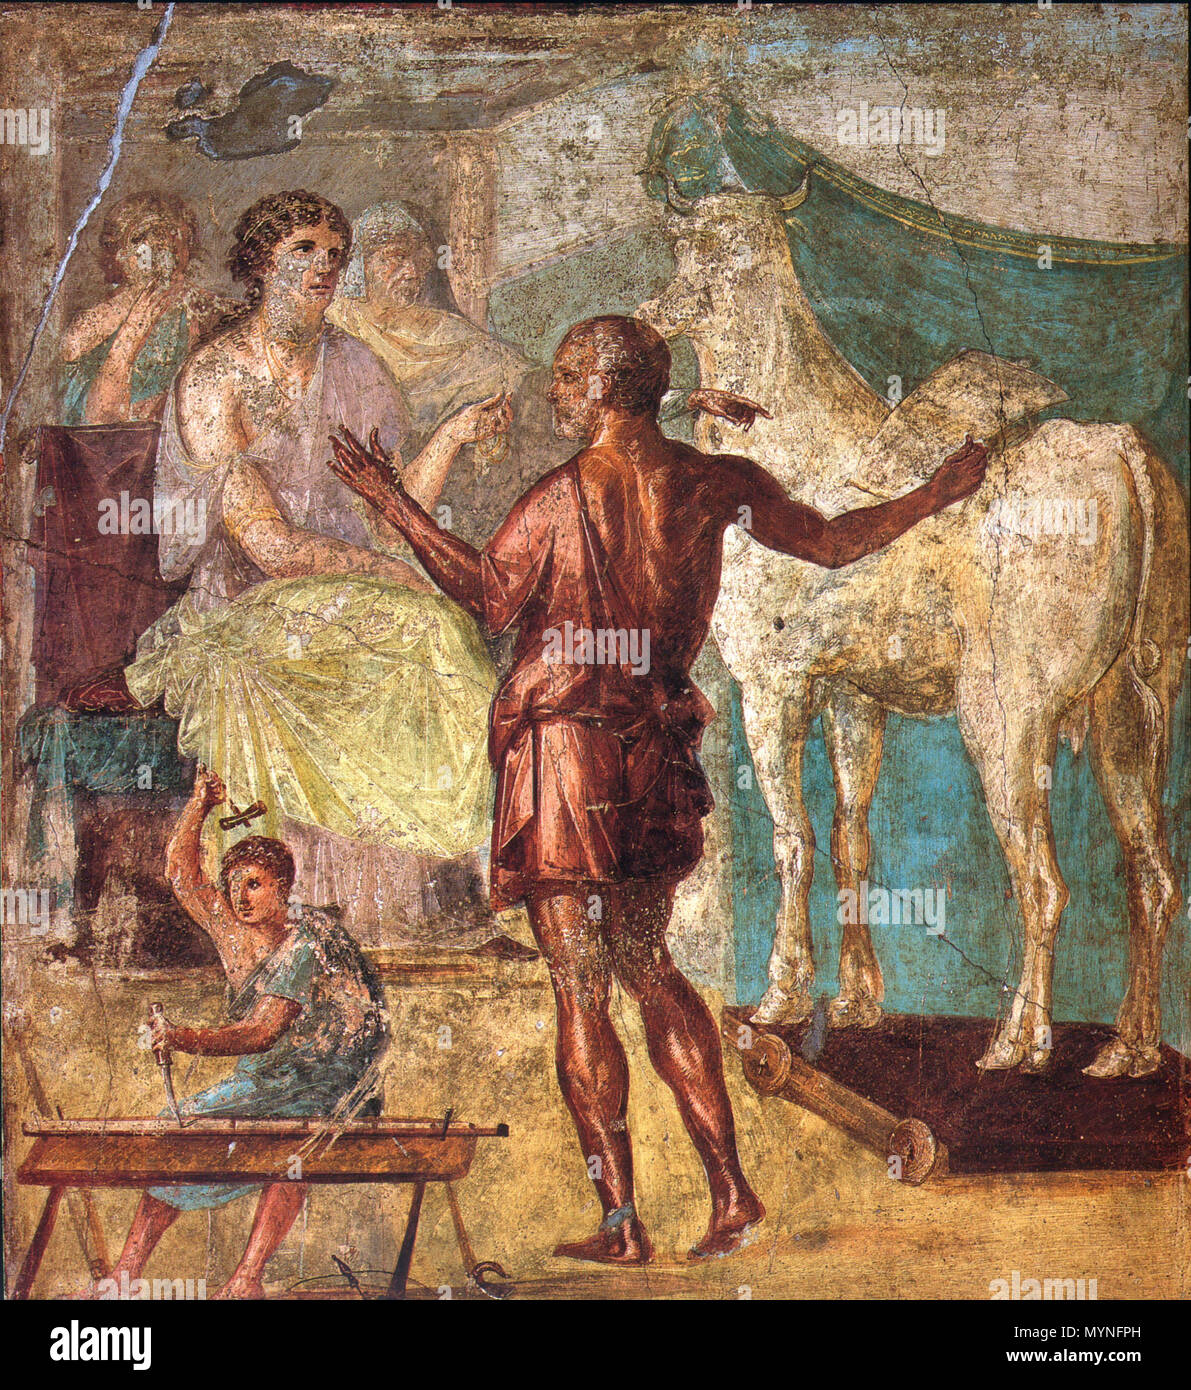 . English: Daedalus, Pasiphae and wooden cow. Roman fresco from the northern wall of the triclinium in the Casa dei Vettii (VI 15,1) in Pompeii. Deutsch: Daedalus übergibt Pasiphae, der Gemahlin des Minos, die hölzerne Kuh. Römisches Fresko von der Nordwand des Tricliniums in der Casa dei Vettii (VI 15,1) in Pompeji. 13 March 2009. WolfgangRieger 429 Pompeii - Casa dei Vettii - Pasiphae Stock Photo